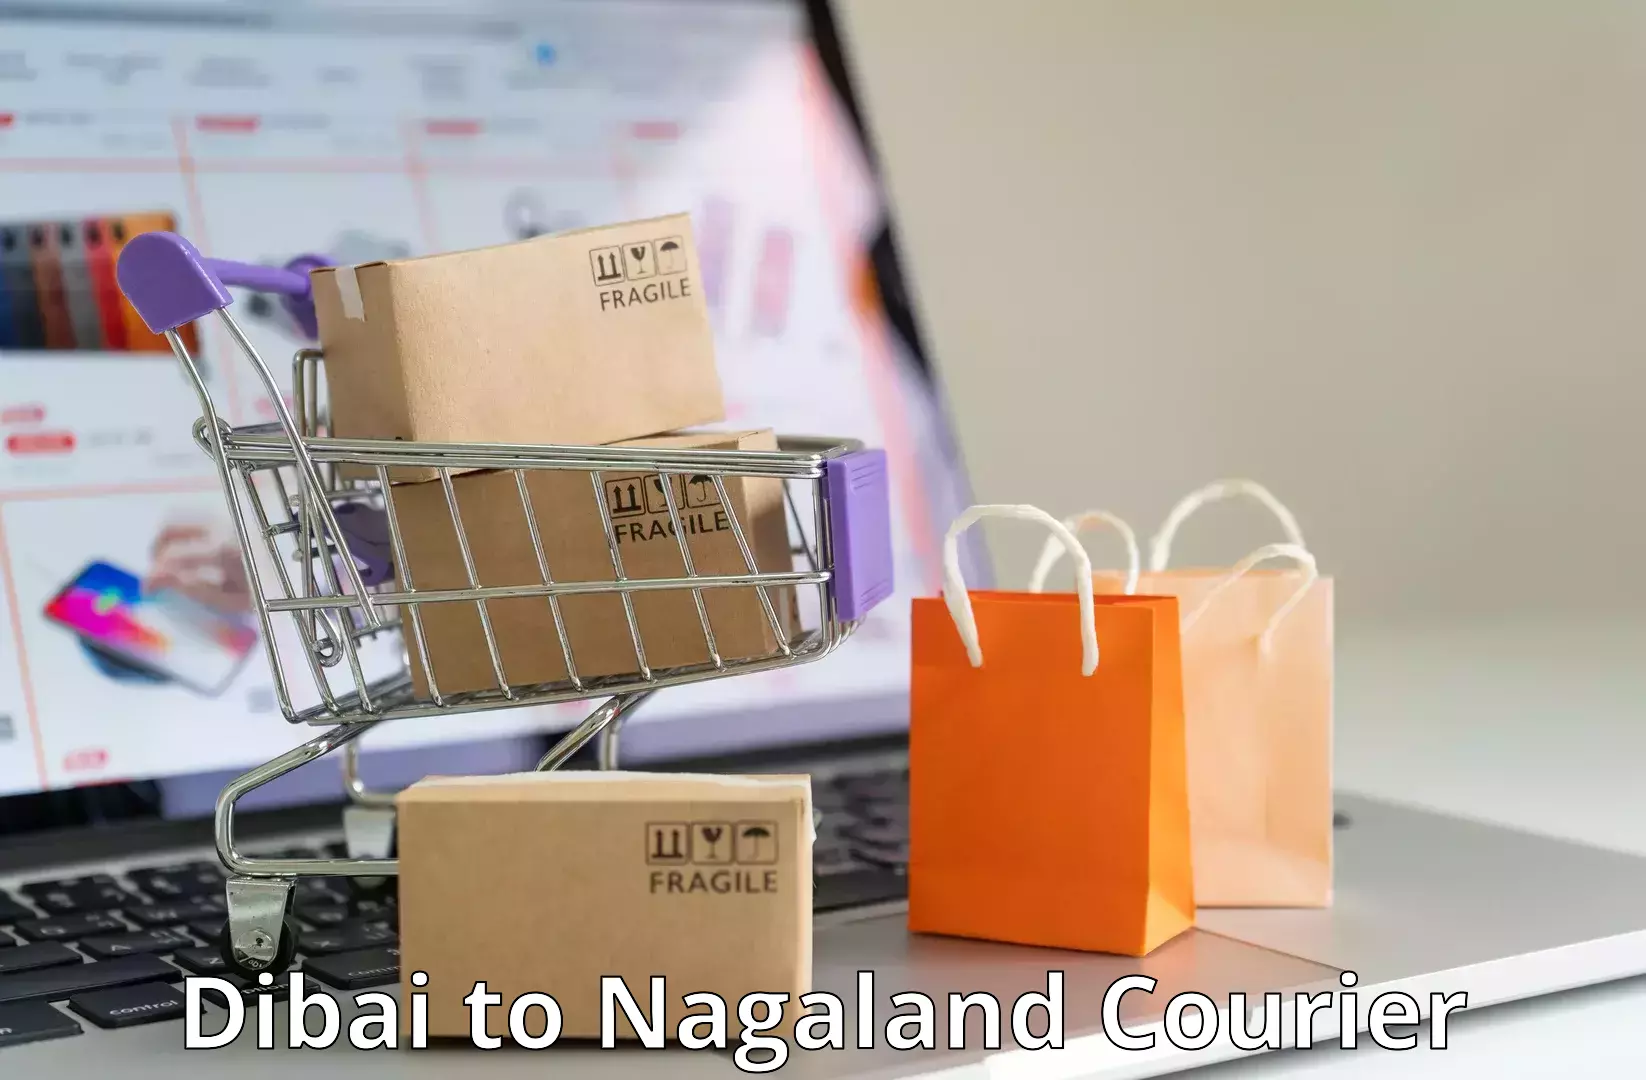 Courier app Dibai to Nagaland